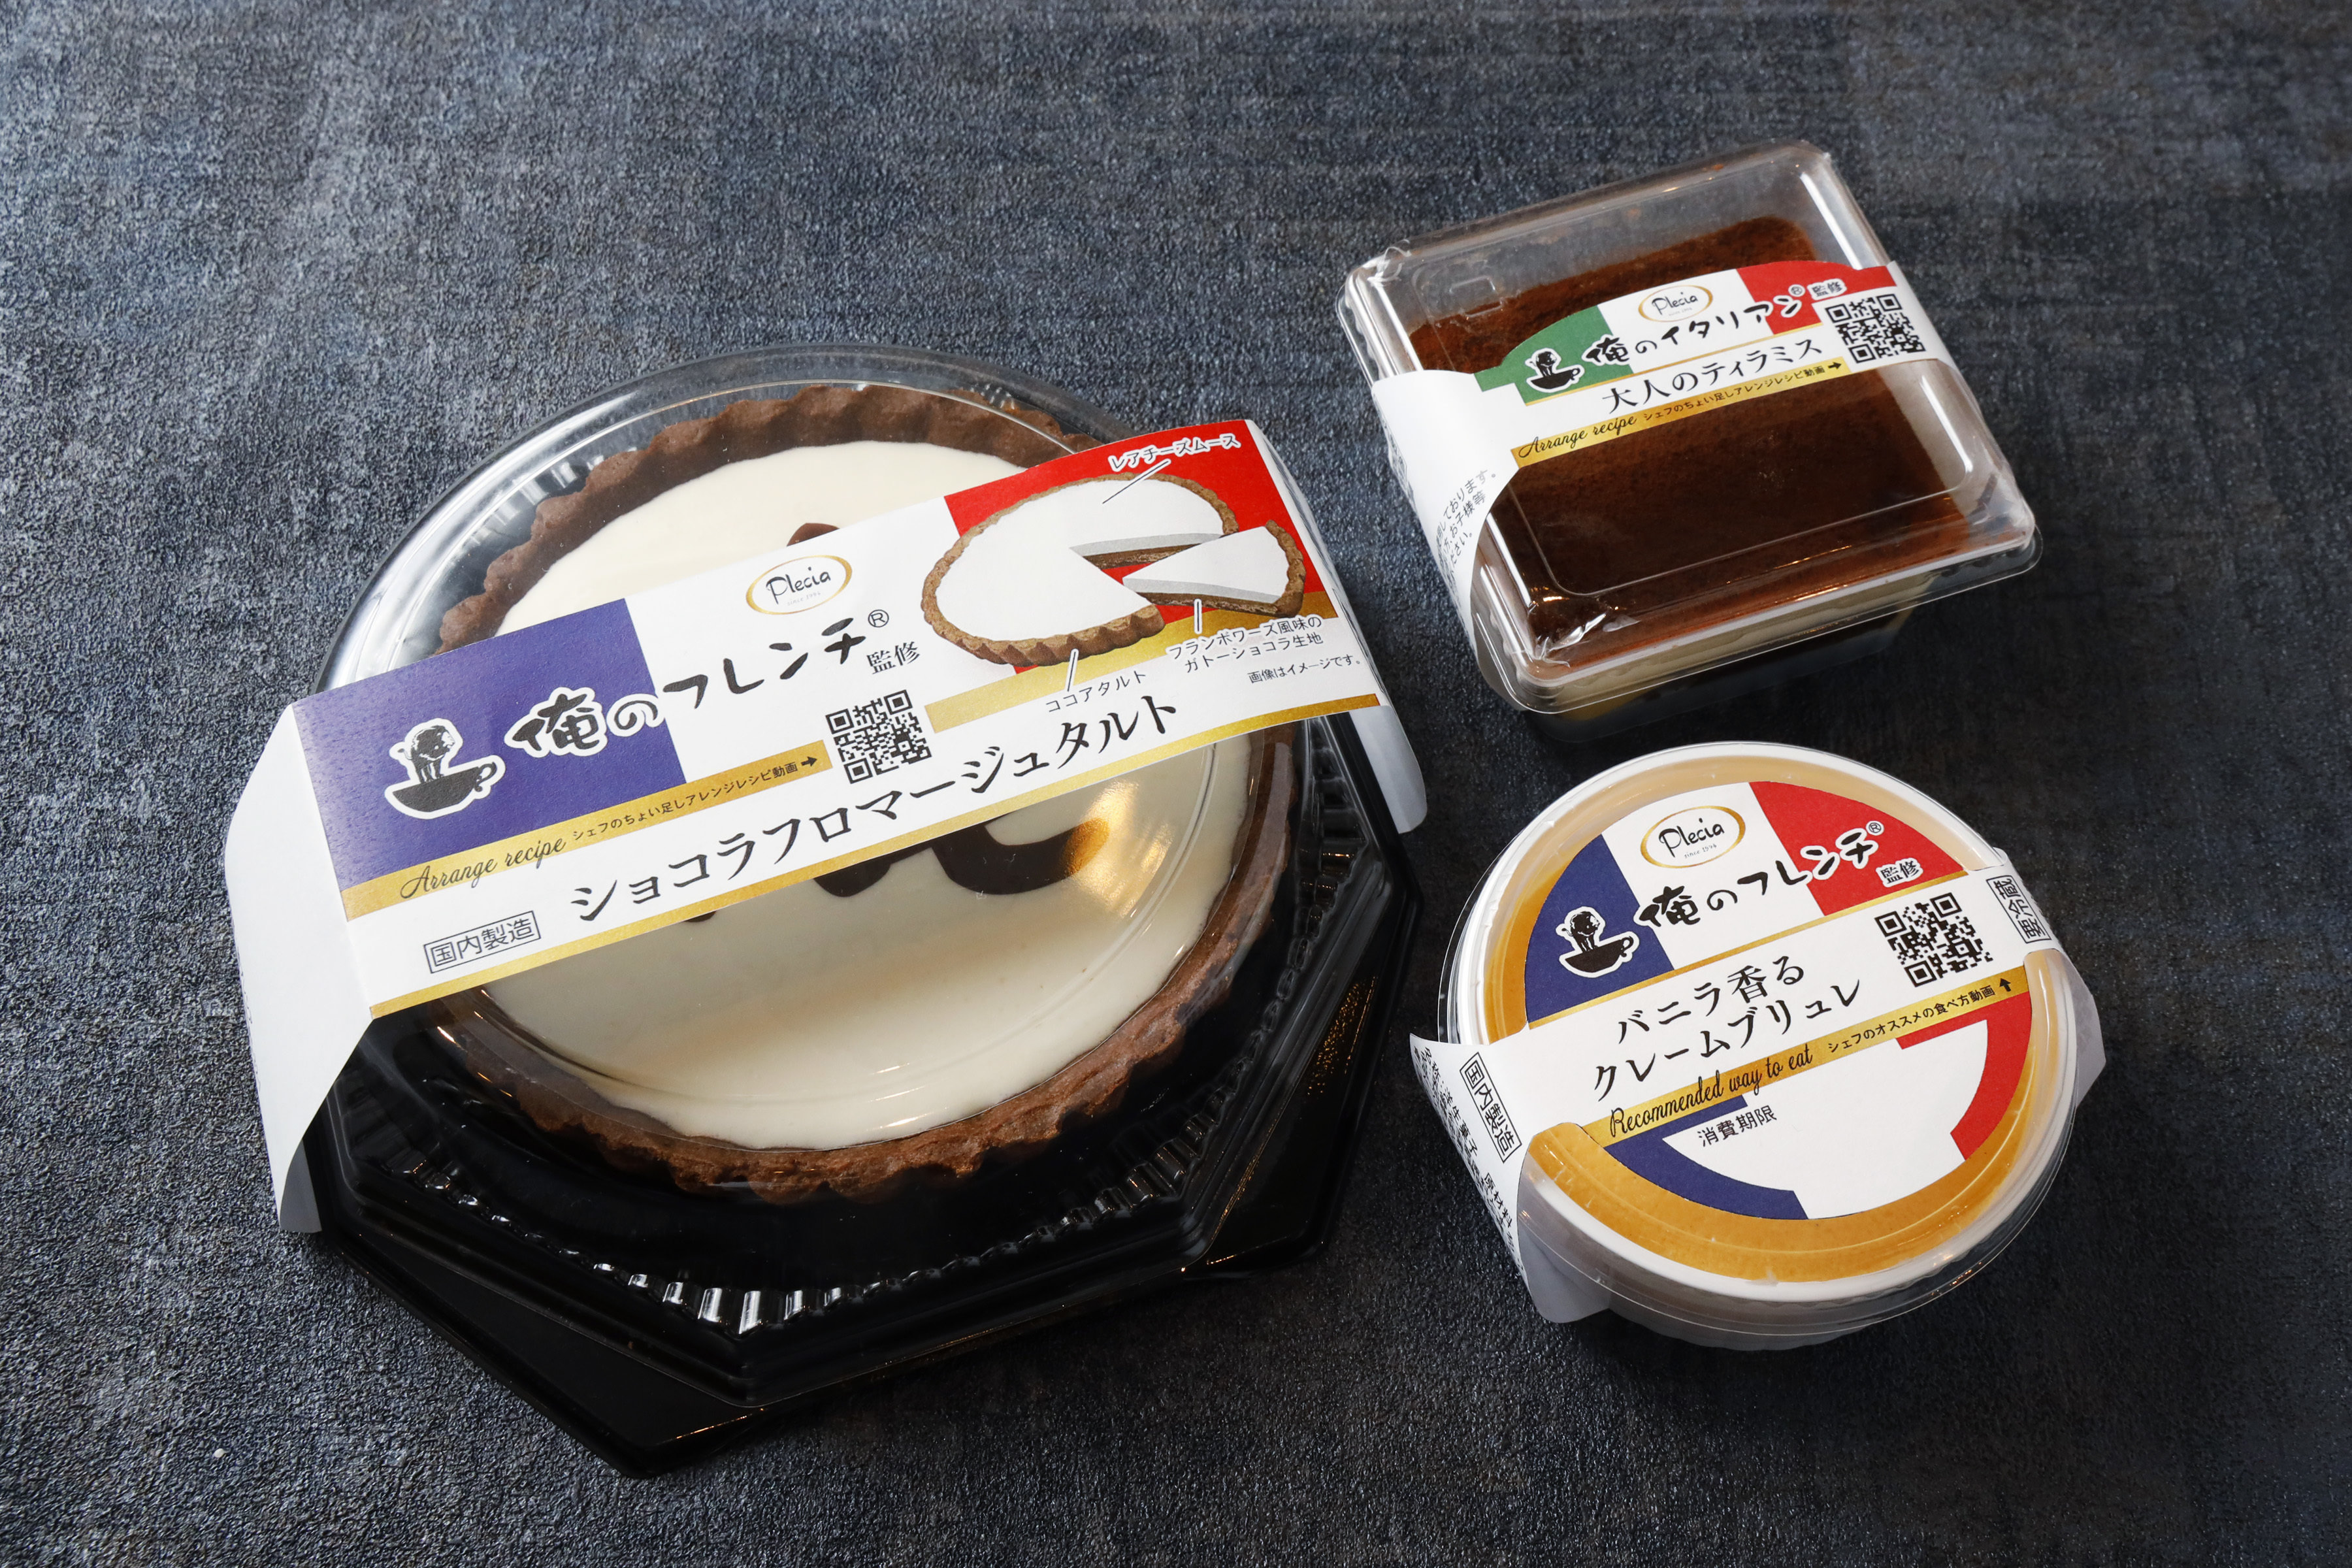 小川珈琲、おうち時間を充実させる
2種類のレギュラーコーヒーを2021年3月1日(月)発売　
～だれかにつながる いつもの香りで ちょっと“イイコト”～